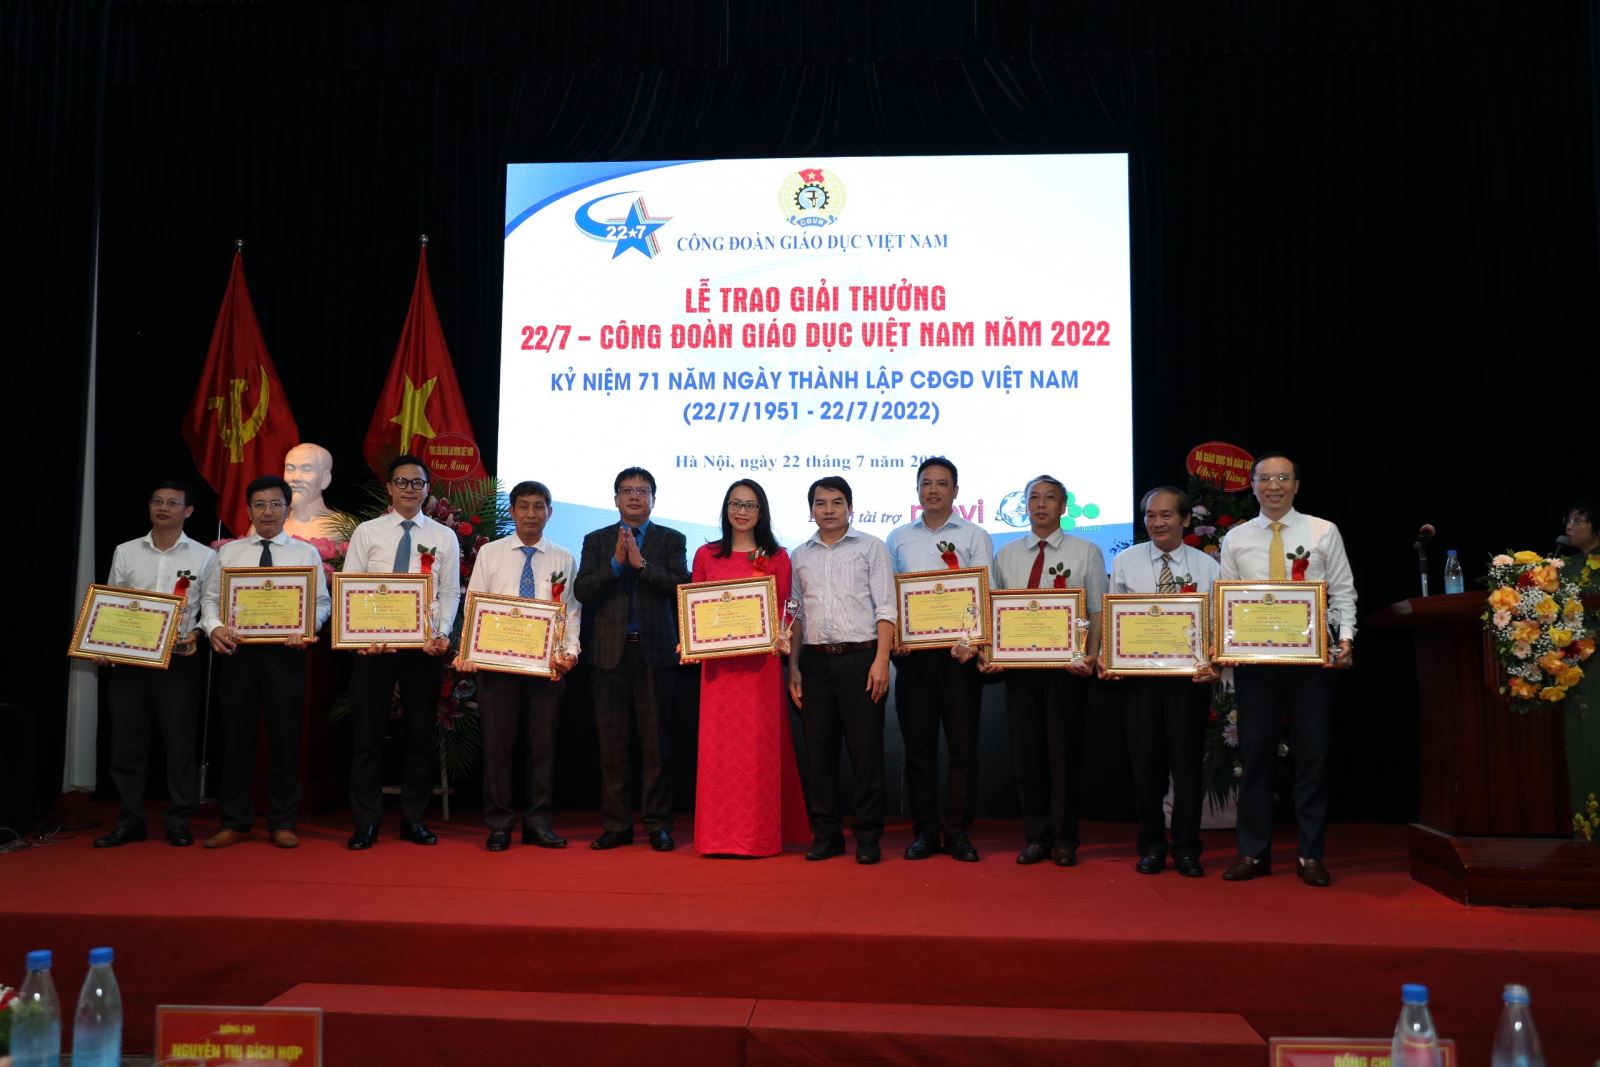 Lễ Trao giải thưởng cho 22/7 - Công đoàn Giáo dục Việt Nam năm 2022